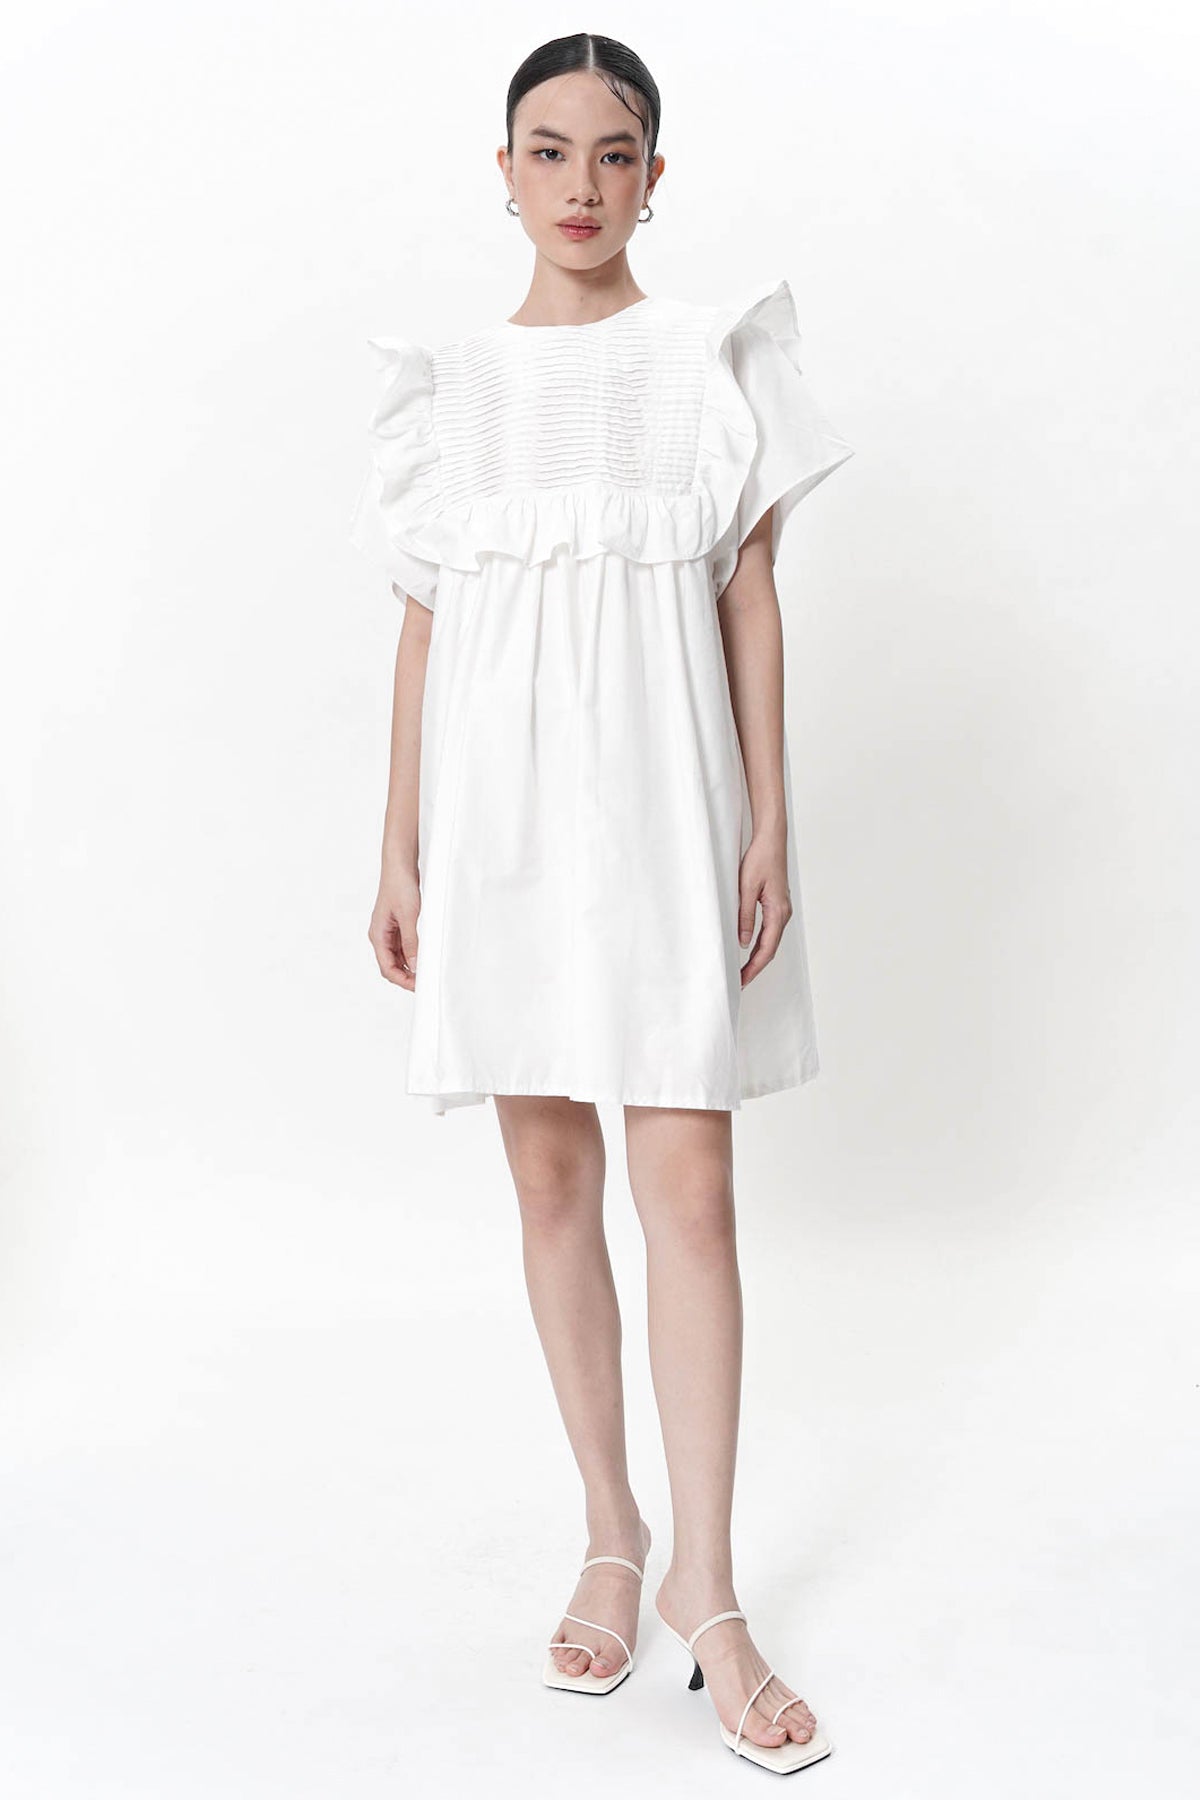 Alaia Pleats Dress In White (Bestseller!)